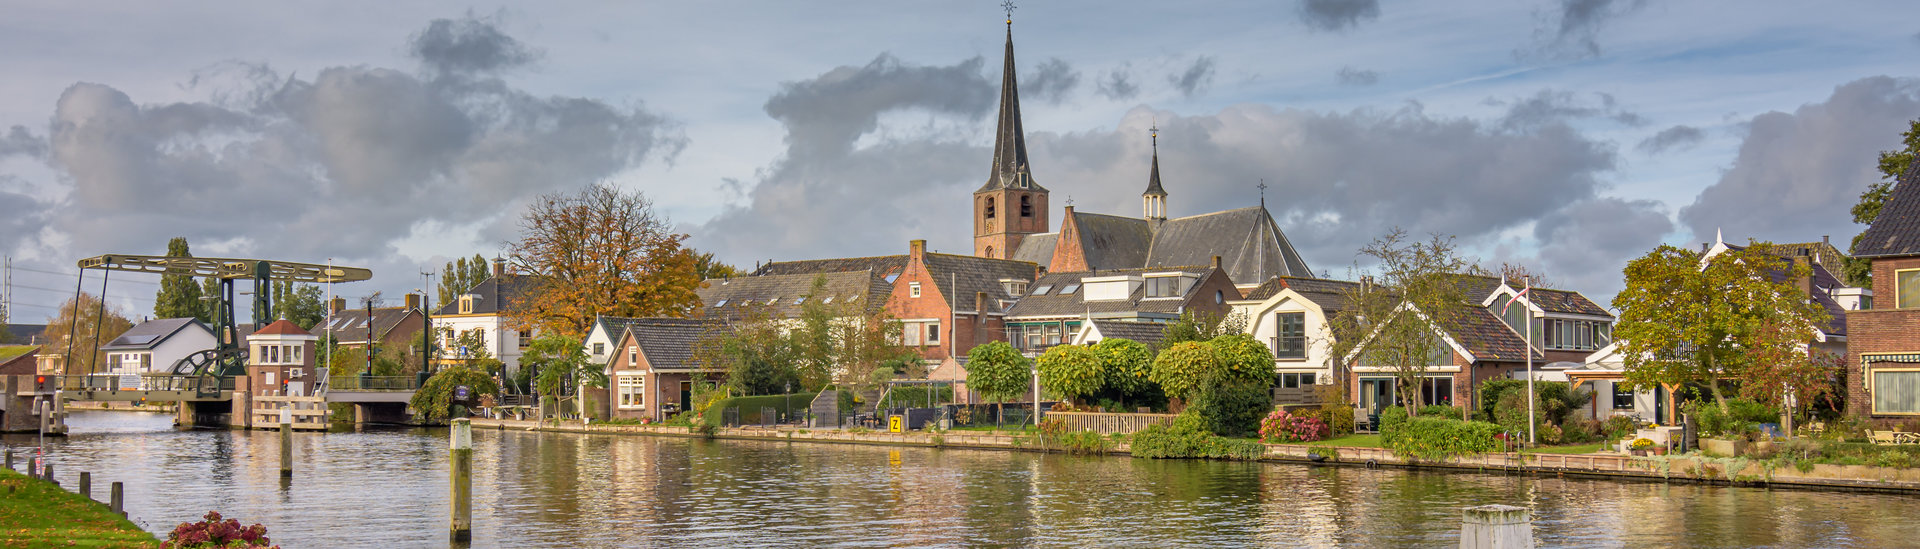 Koudekerk,Aan,Den,Rijn,,Zuid-holland,,The,Netherlands,-,October,27